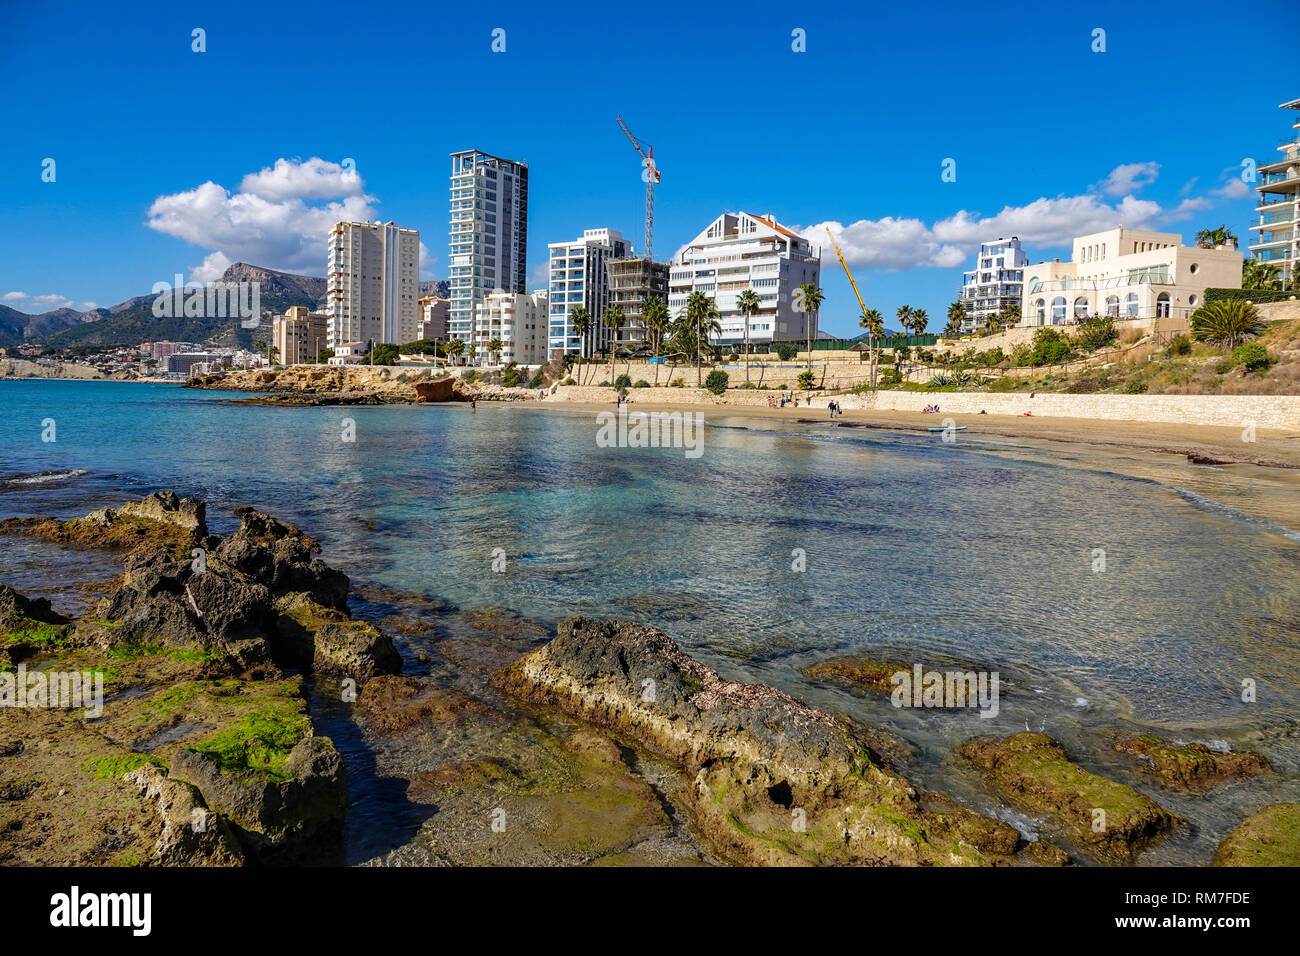 Mar azul, playa y bloques de apartamentos en el centro turístico popular española de Calpe, provincia de Valencia, España Foto de stock